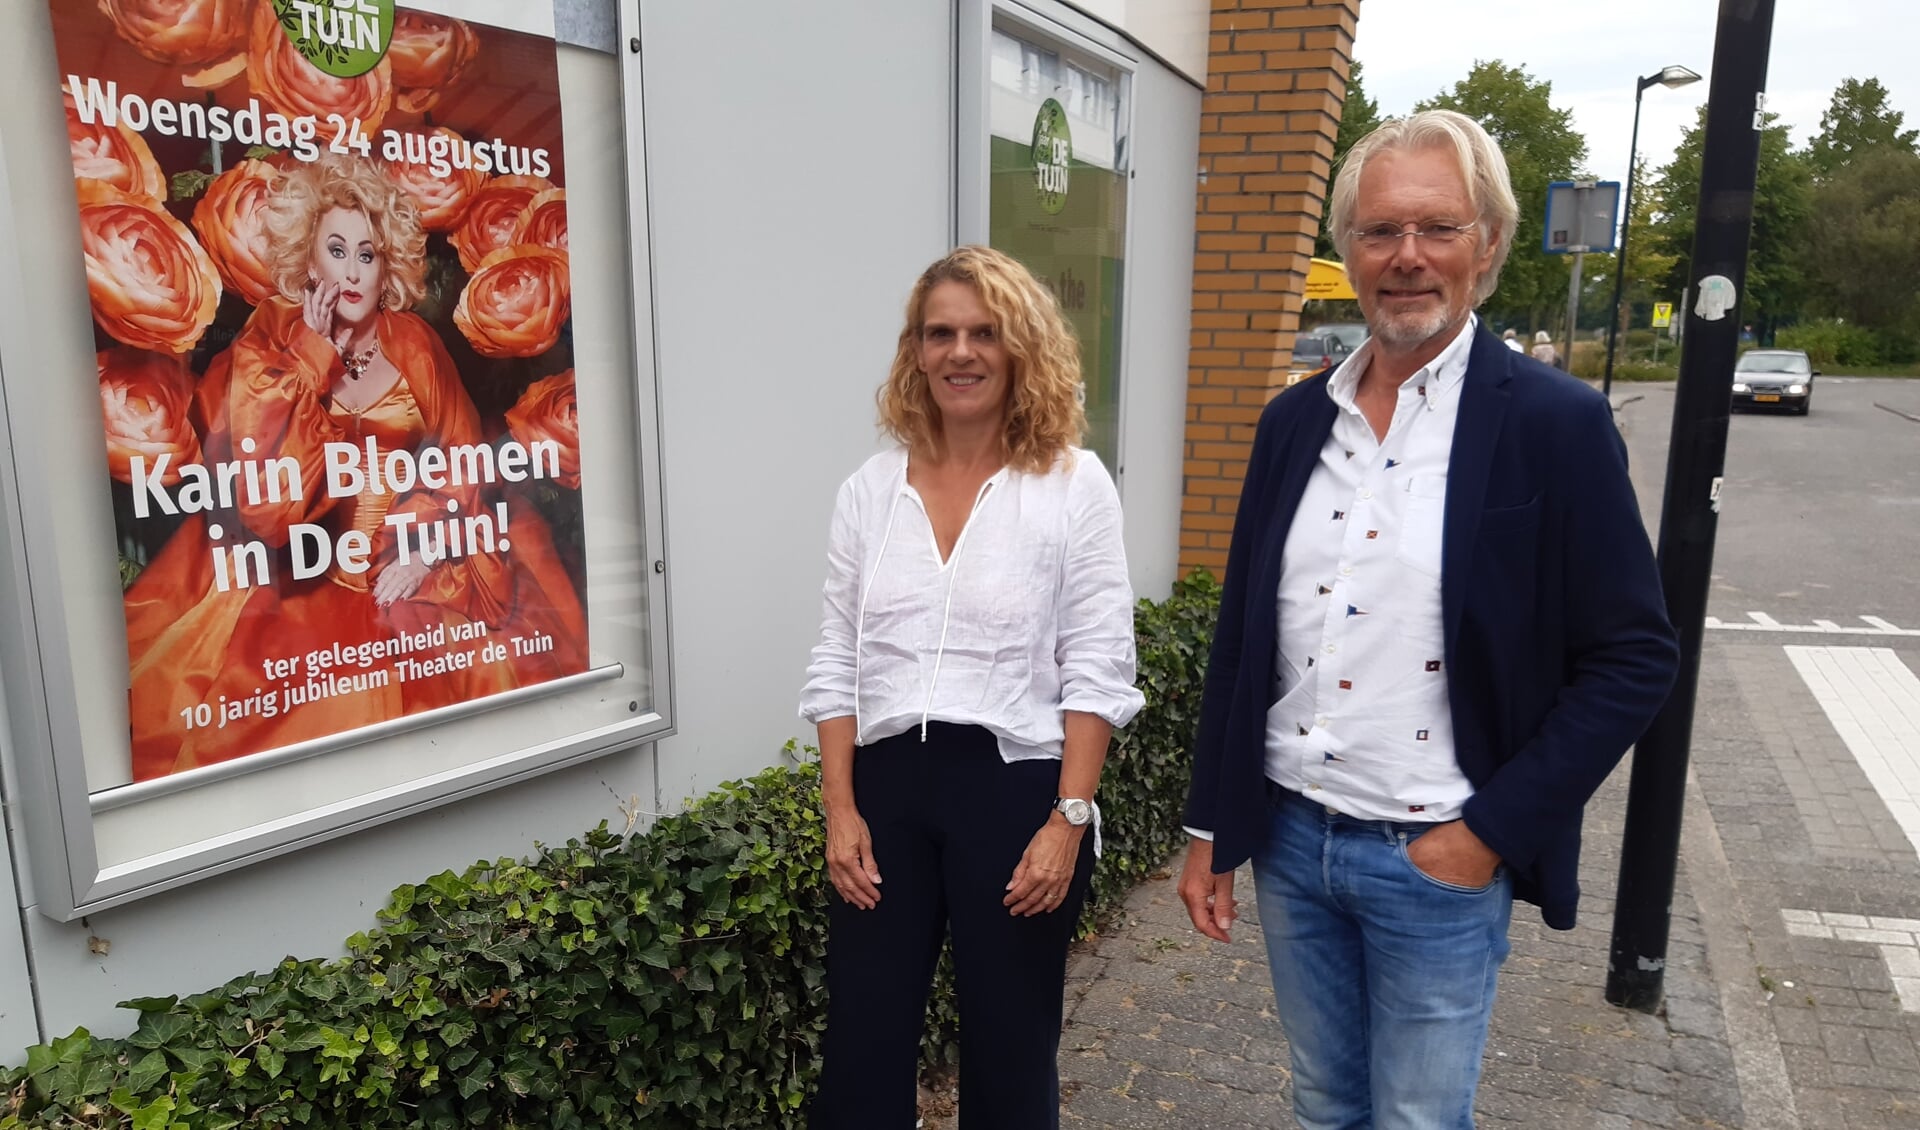 Programmaleider Jessica Kroeske en voorzitter Wim Oeben poseren bij de poster van de jubileumvoorstelling van Karin Bloemen.